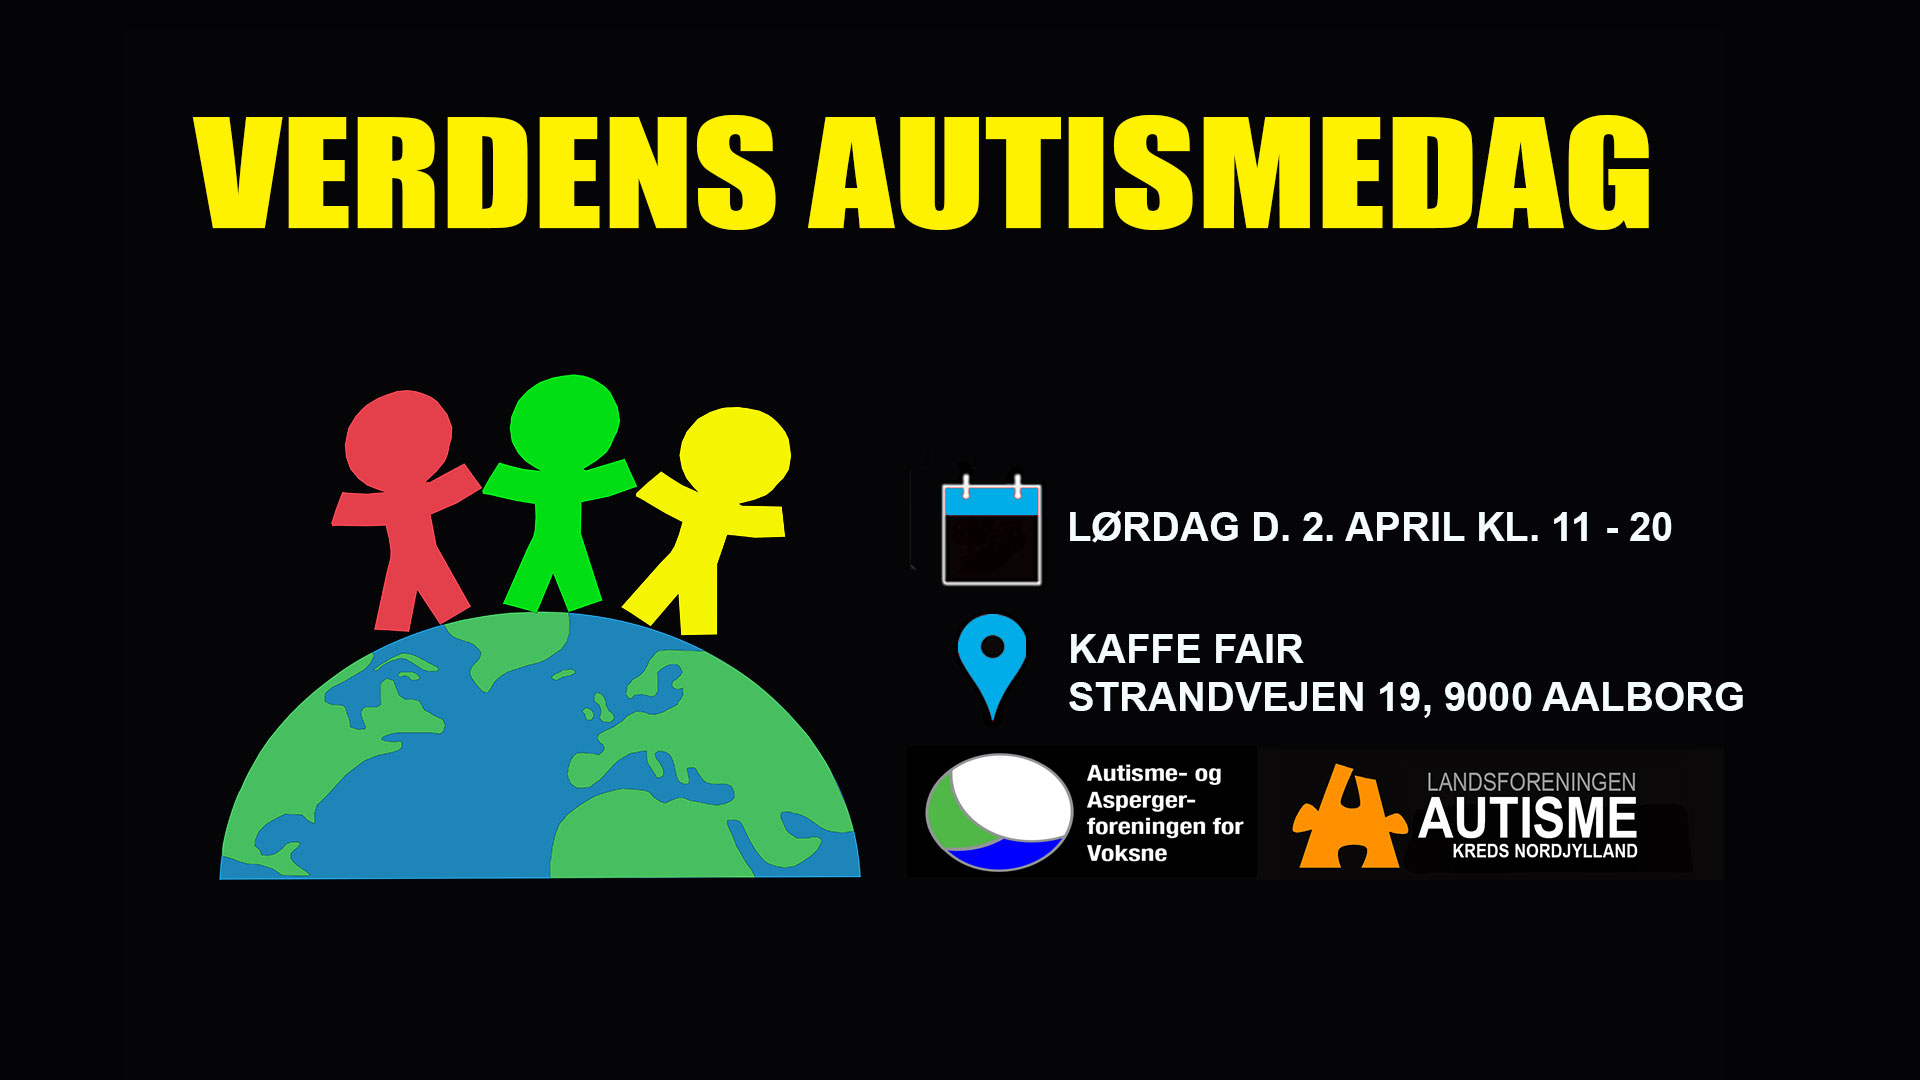 Autismedag 2. April i Aalborg på Kaffefair